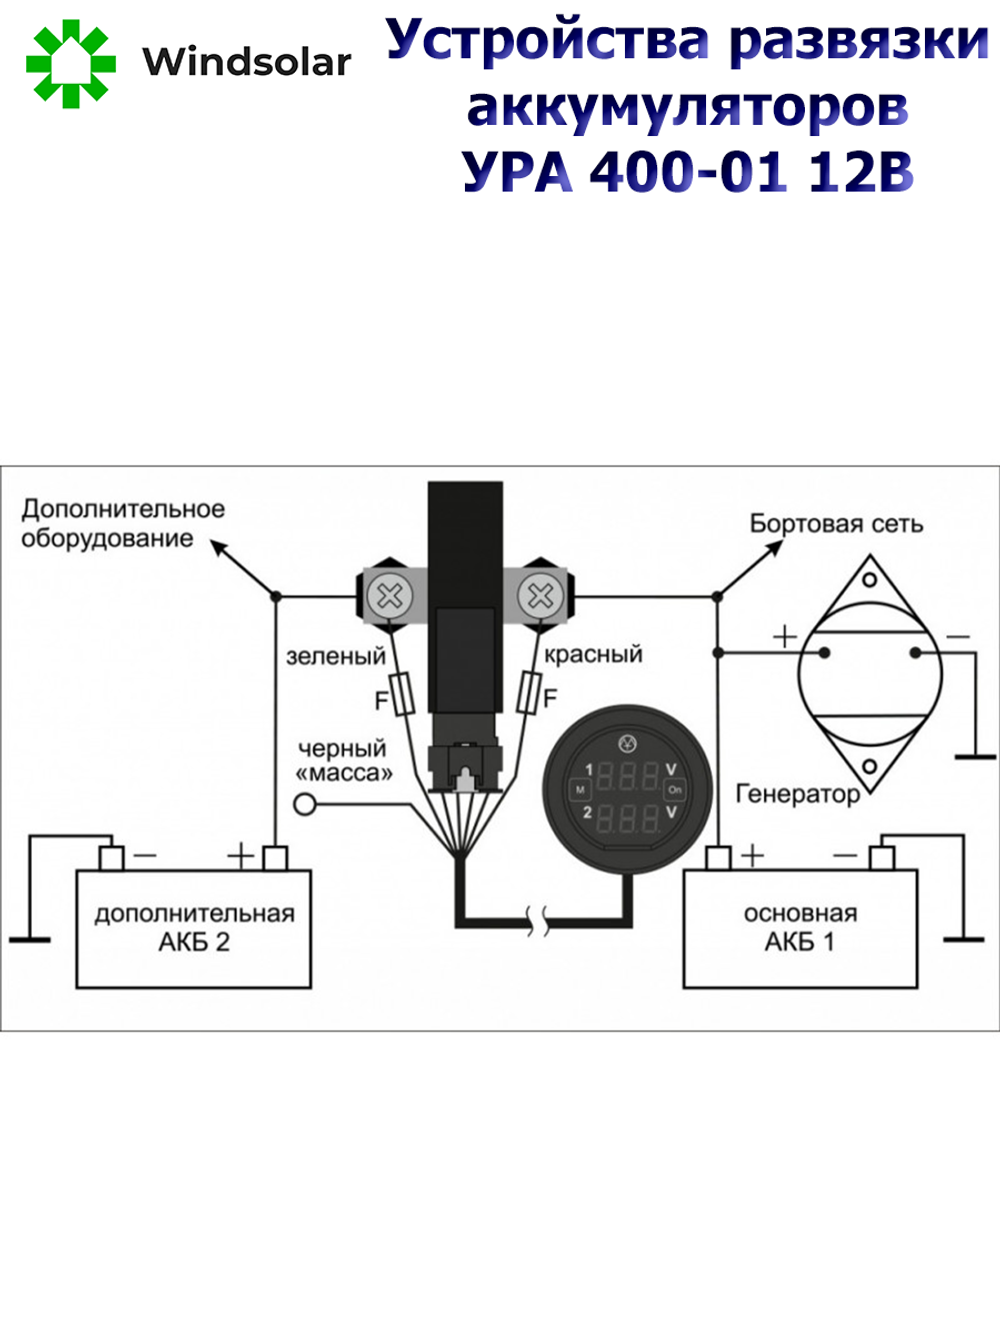 Устройство развязки аккумуляторов УРА 400-01 ЭНЕРГОМАШ (12В / Ном. 250А / Макс 400А / Блок Управления)